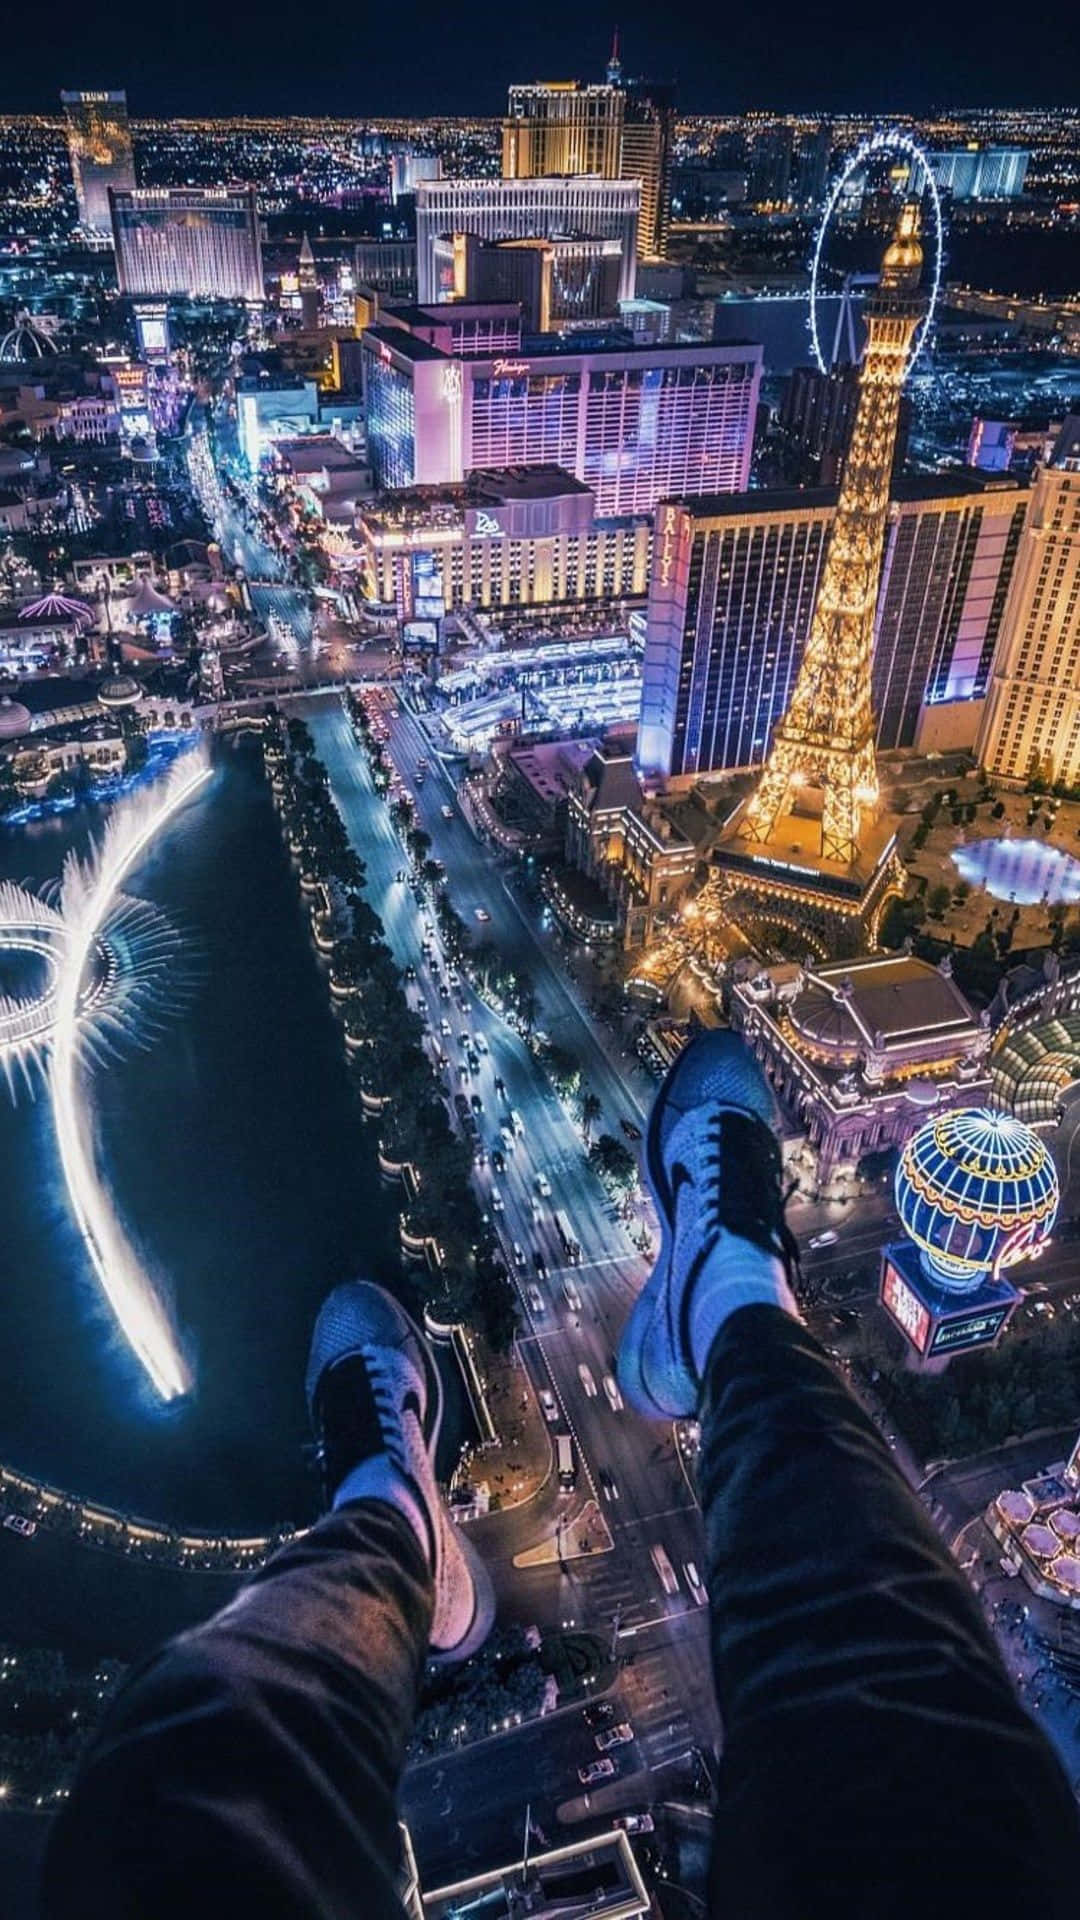 Hintergrundbilddes Bellagio Hotels Und Casinos Bei Nacht Mit Blick Auf Las Vegas (im Hochformat)